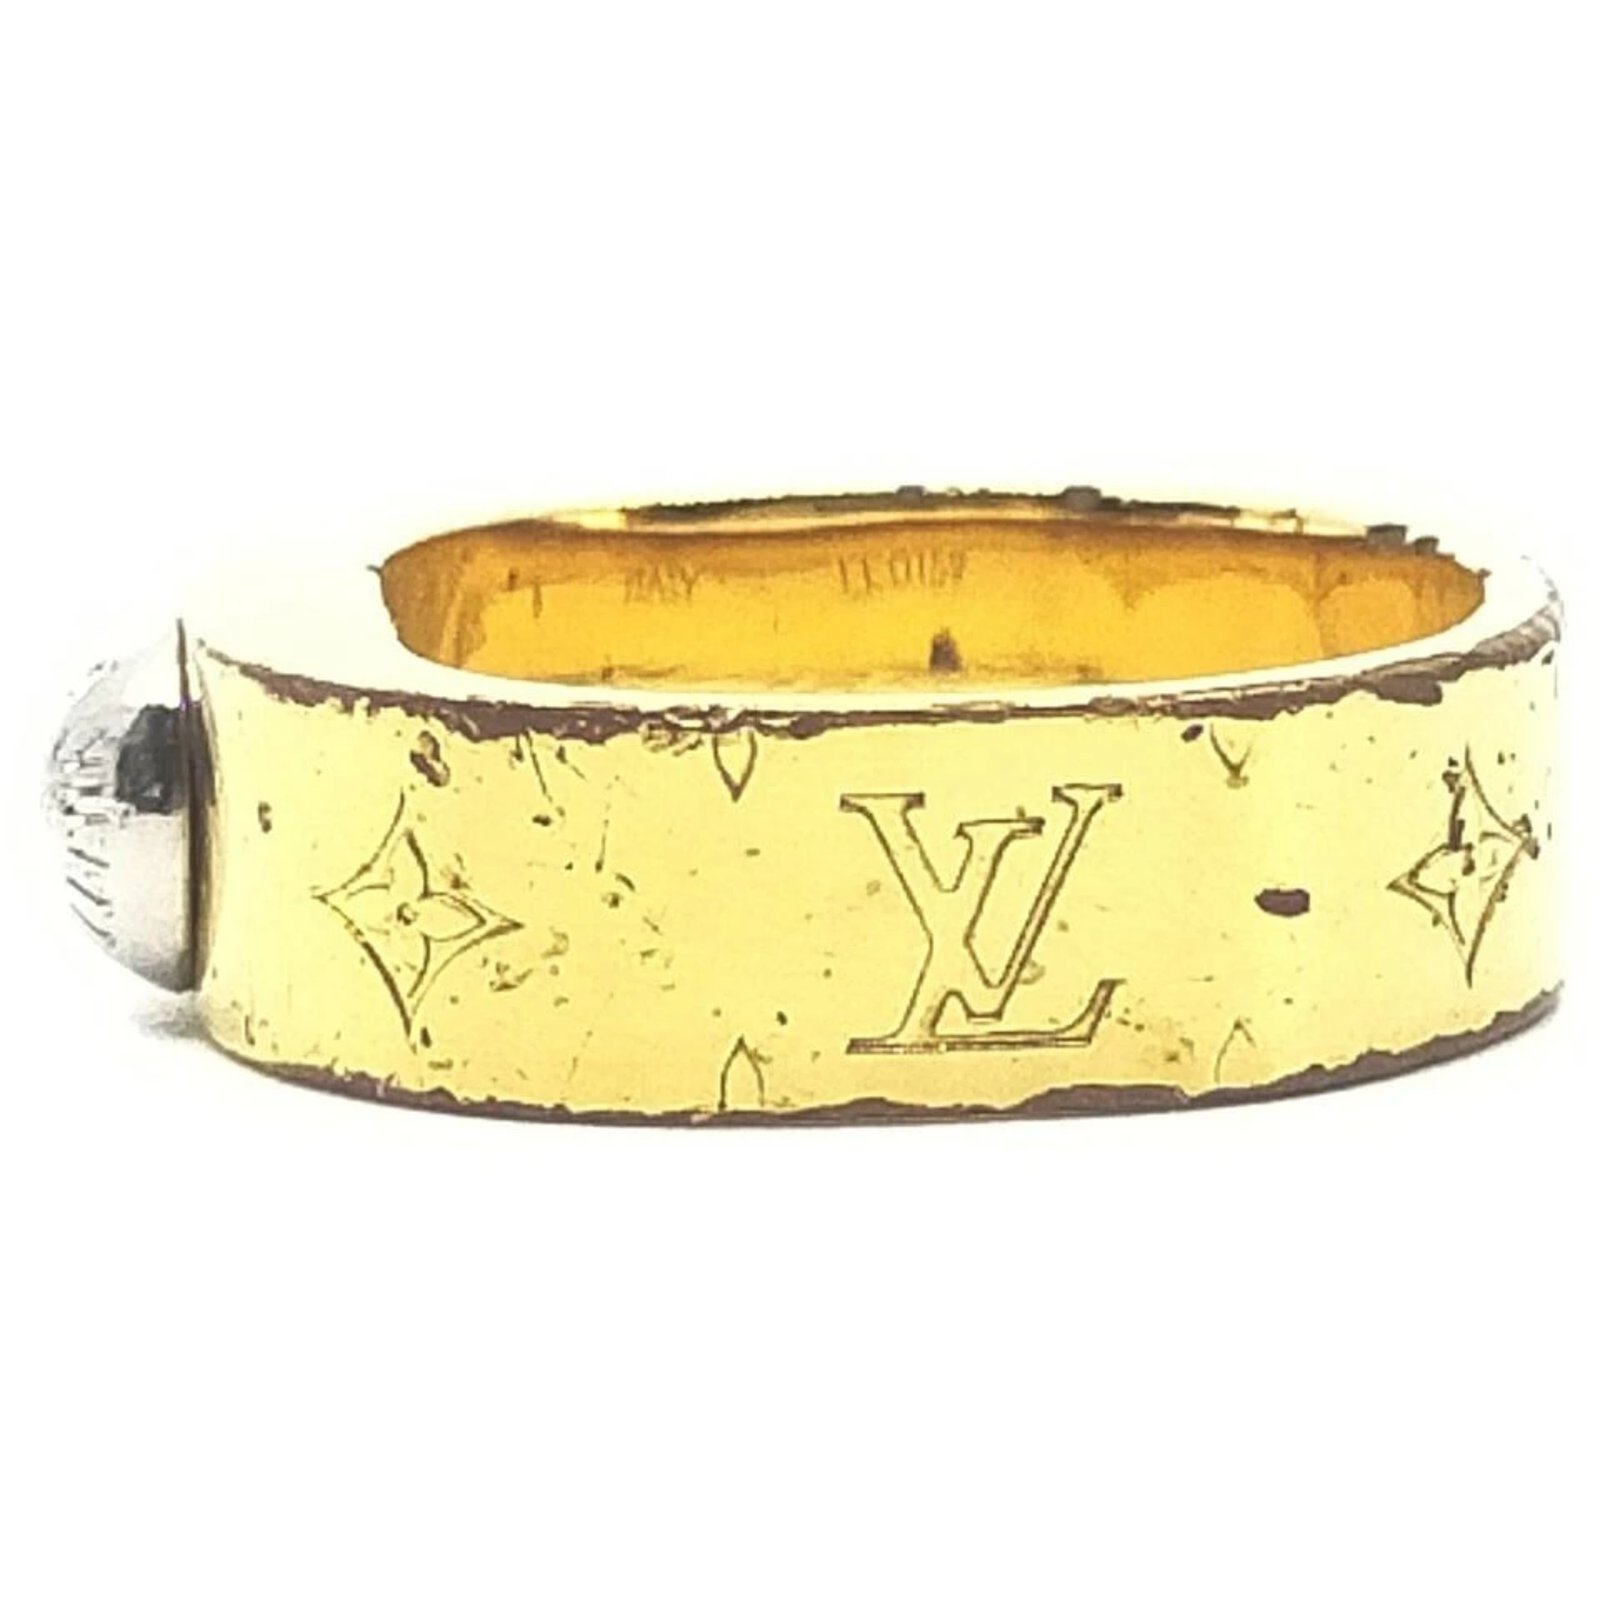 Louis Vuitton Ring Nanogram S M00210 Ring 5.5 US GOLD+SILVER Women